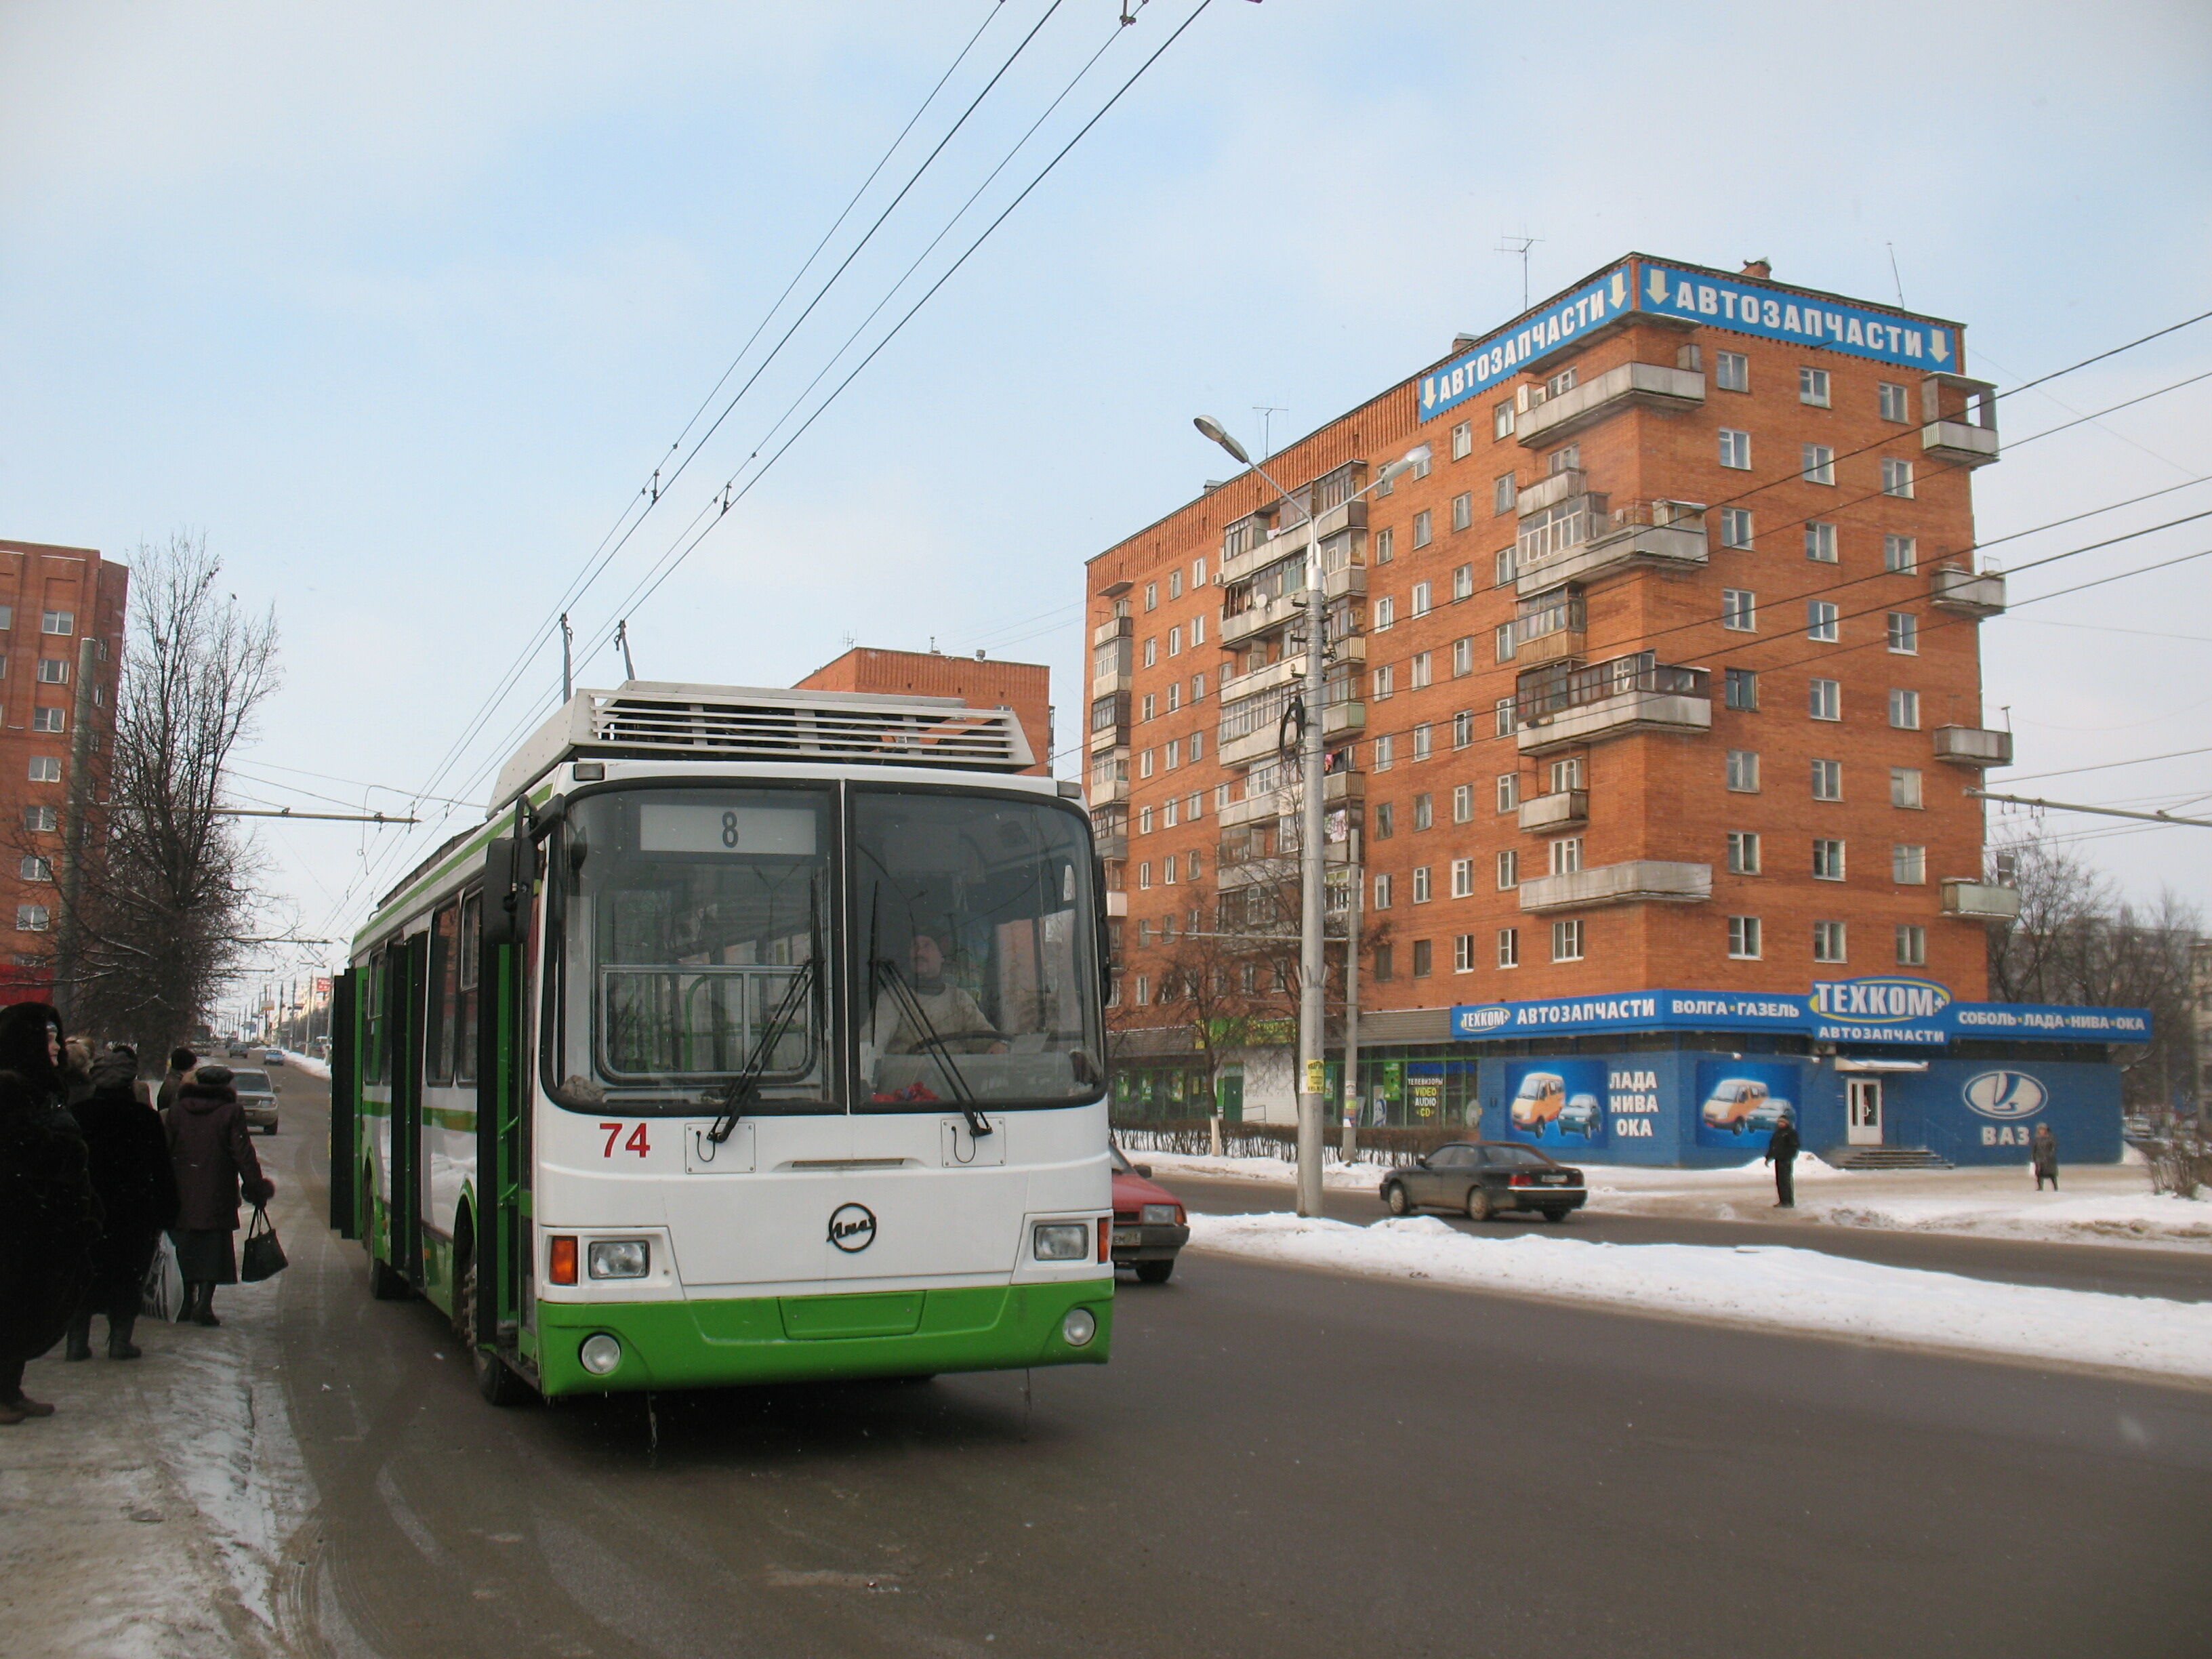 Троллейбус 74 ЛиАЗ-5280 построен в 2006. Новая троллейбусная линия на восток по Ложевой улице